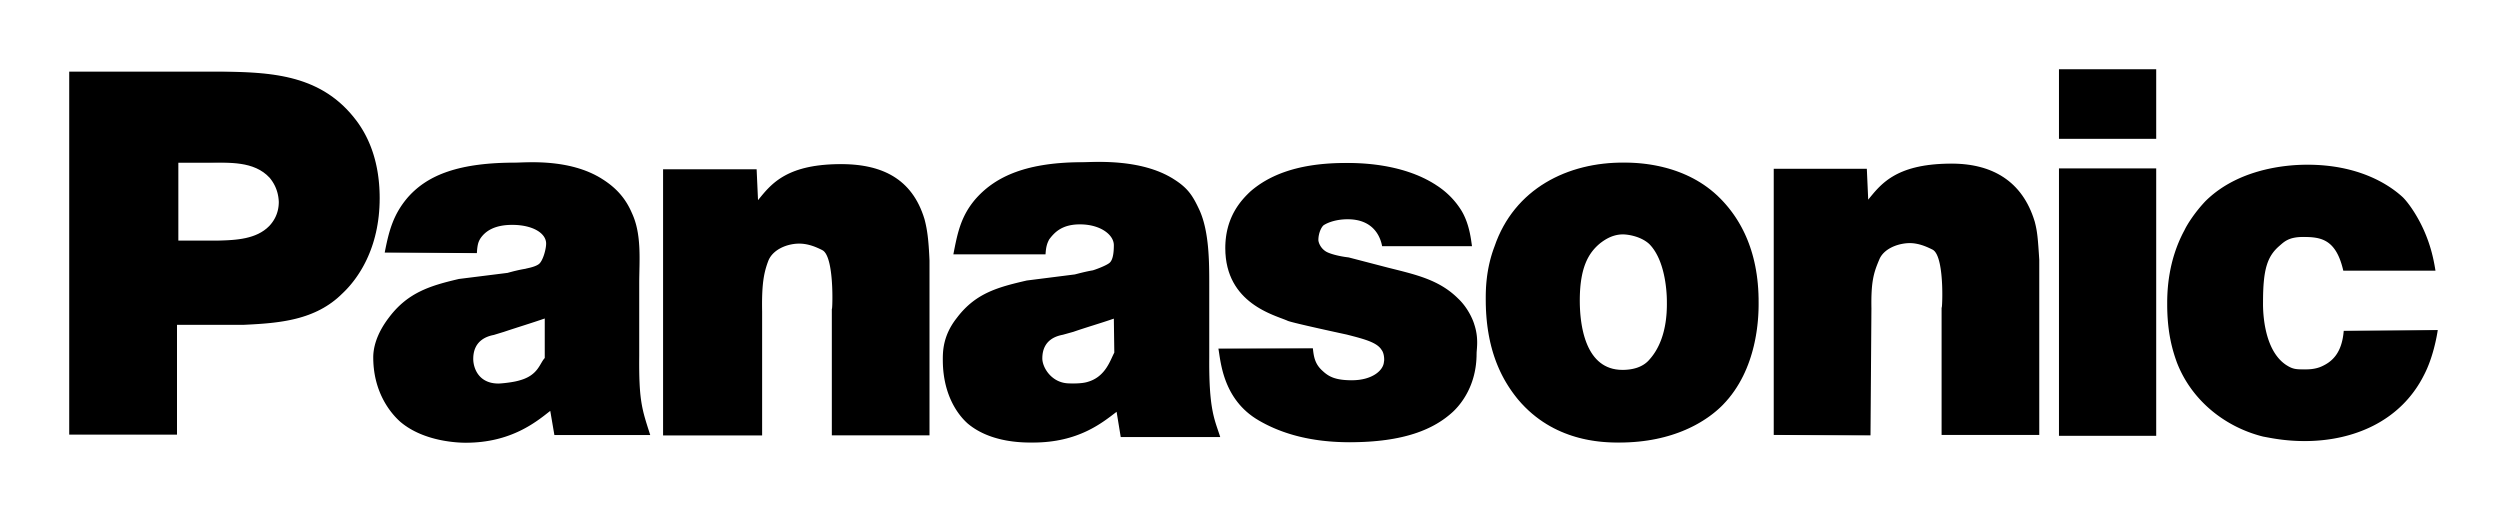 Panasonic – Logos Download